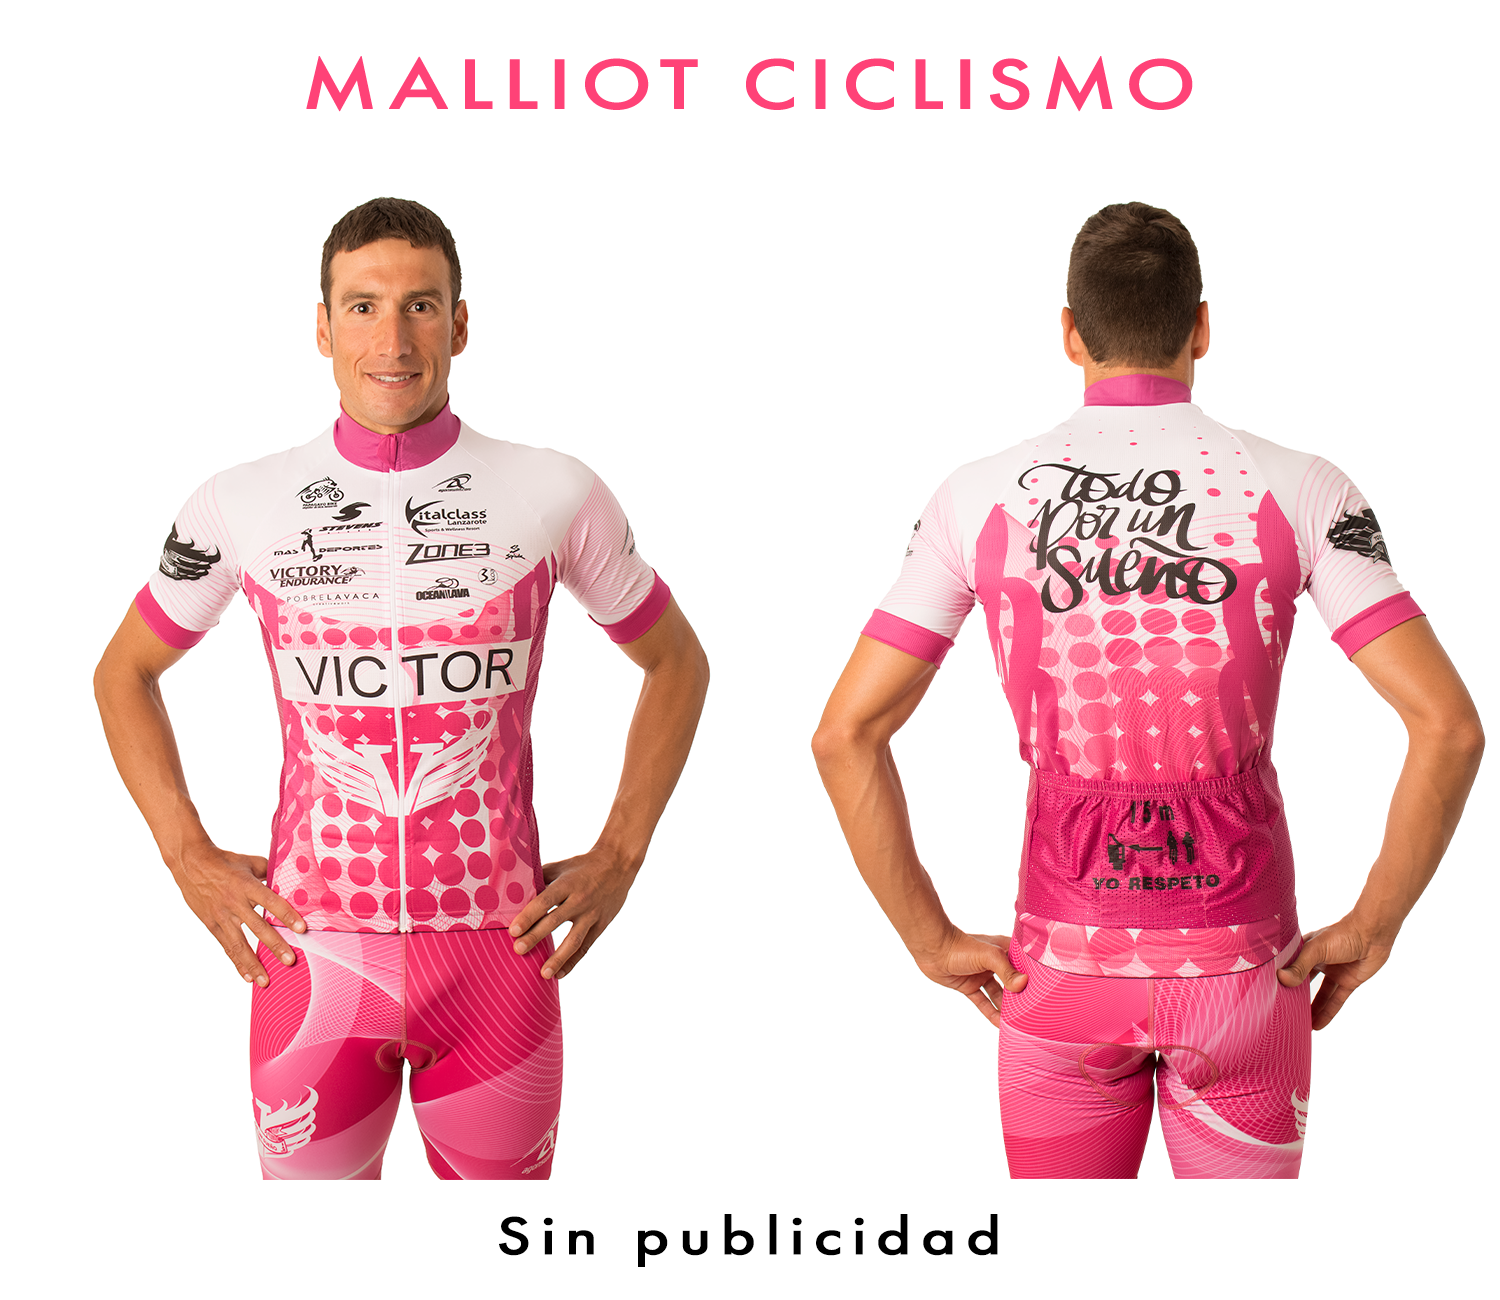 Malliot Ciclismo.png